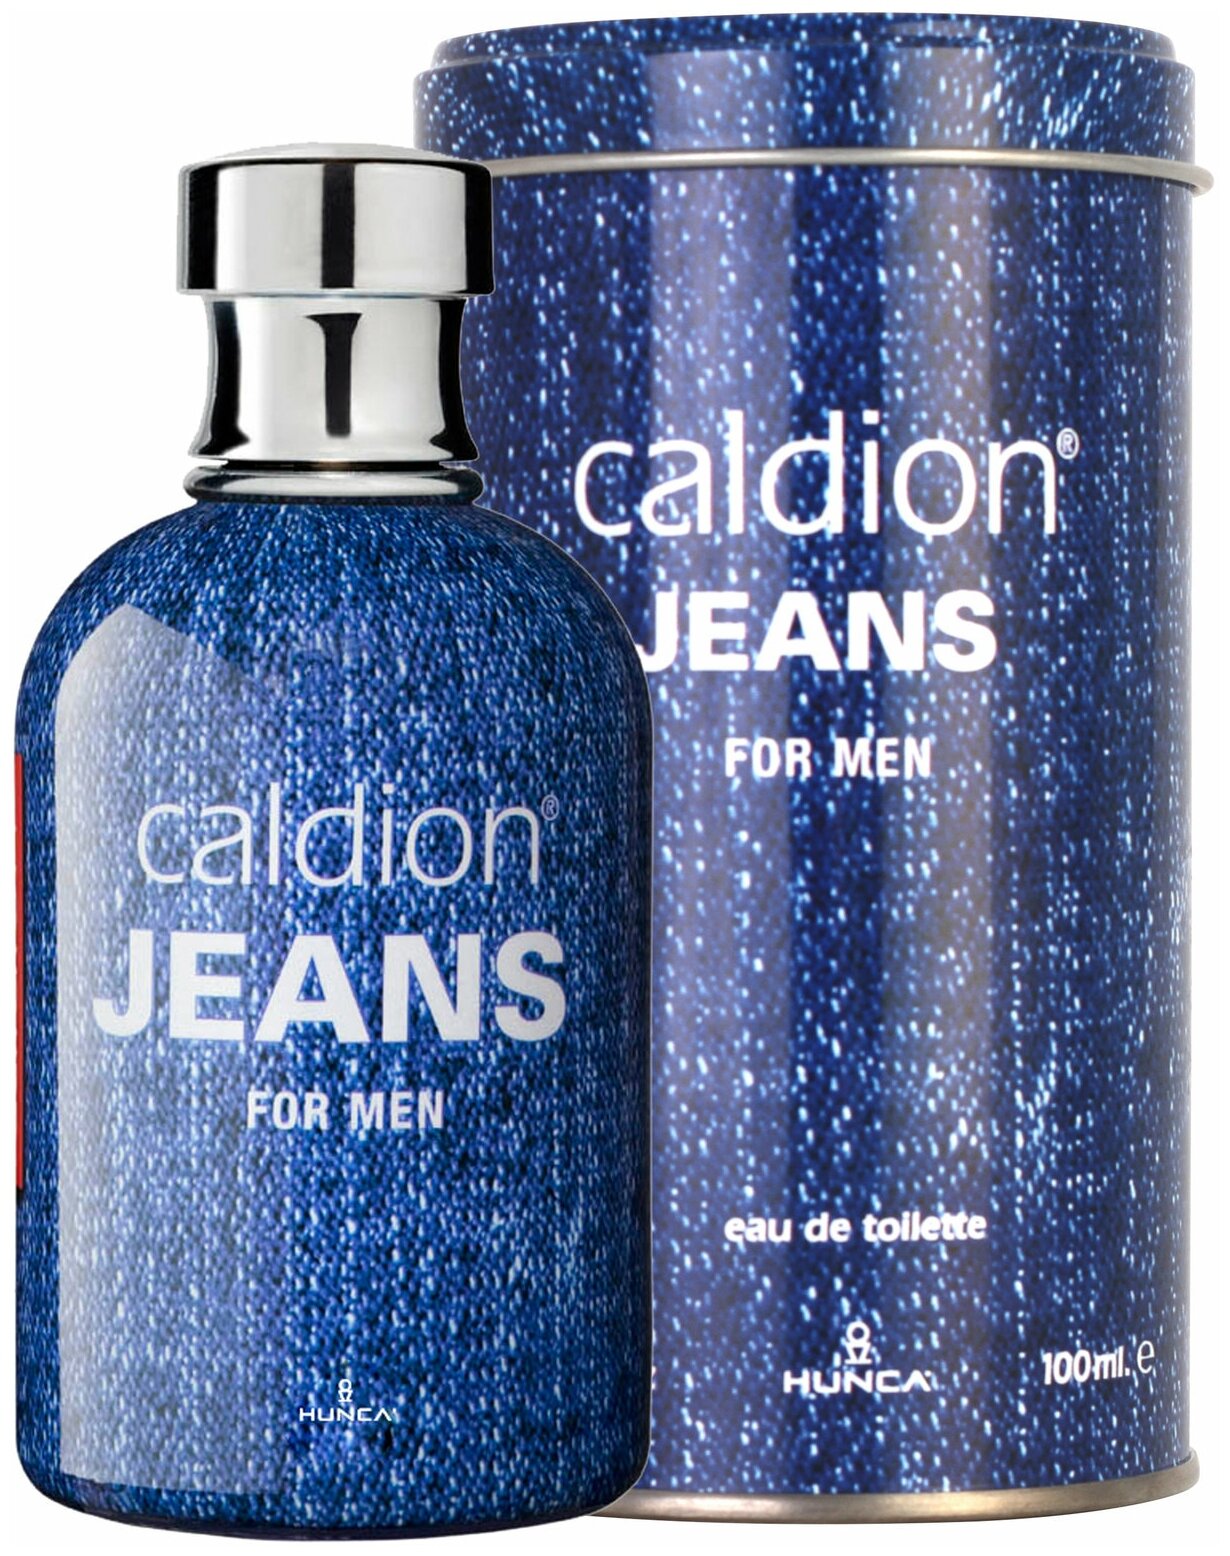 Туалетная вода мужская Hunca Caldion JEANS For Men, 100 мл Хунка Калдион мужские духи ароматы для него